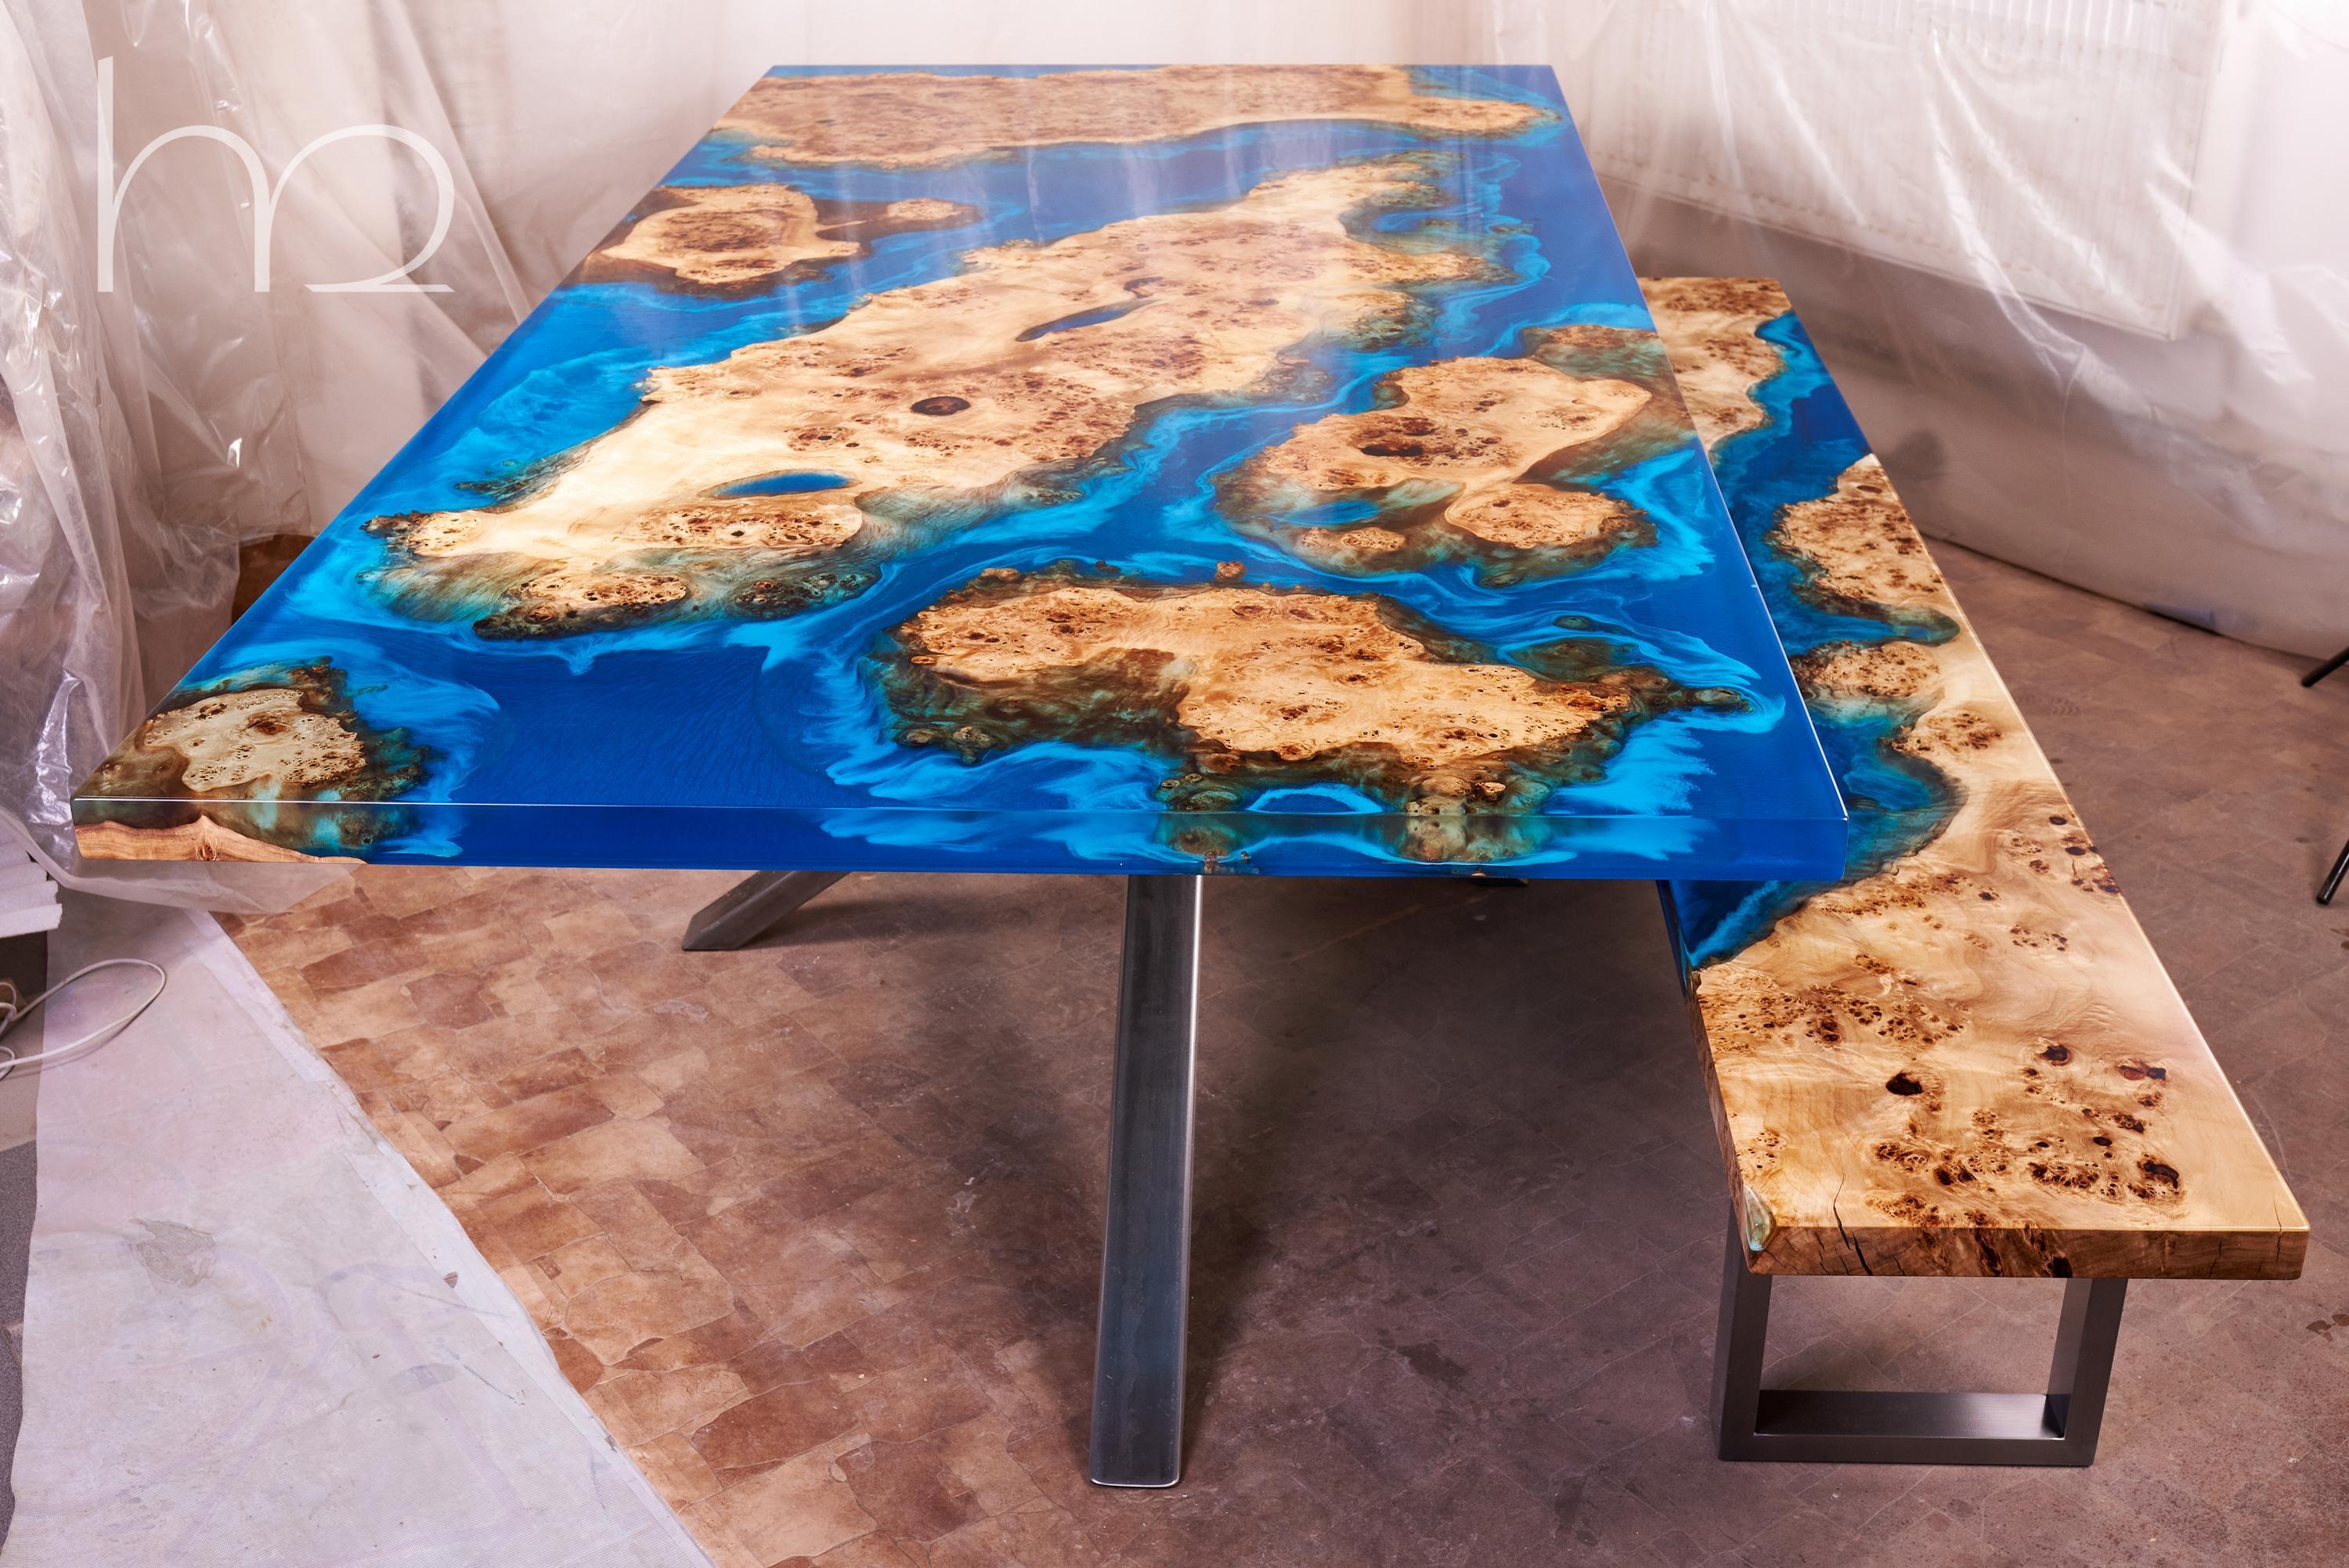 La table est constituée de magnifiques dalles anciennes de ronce. Leur texture a été façonnée au cours de centaines d'années pour obtenir l'aspect qu'elle a aujourd'hui. Lorsque le bois a séché, nous avons décidé de l'immortaliser sous cette forme.